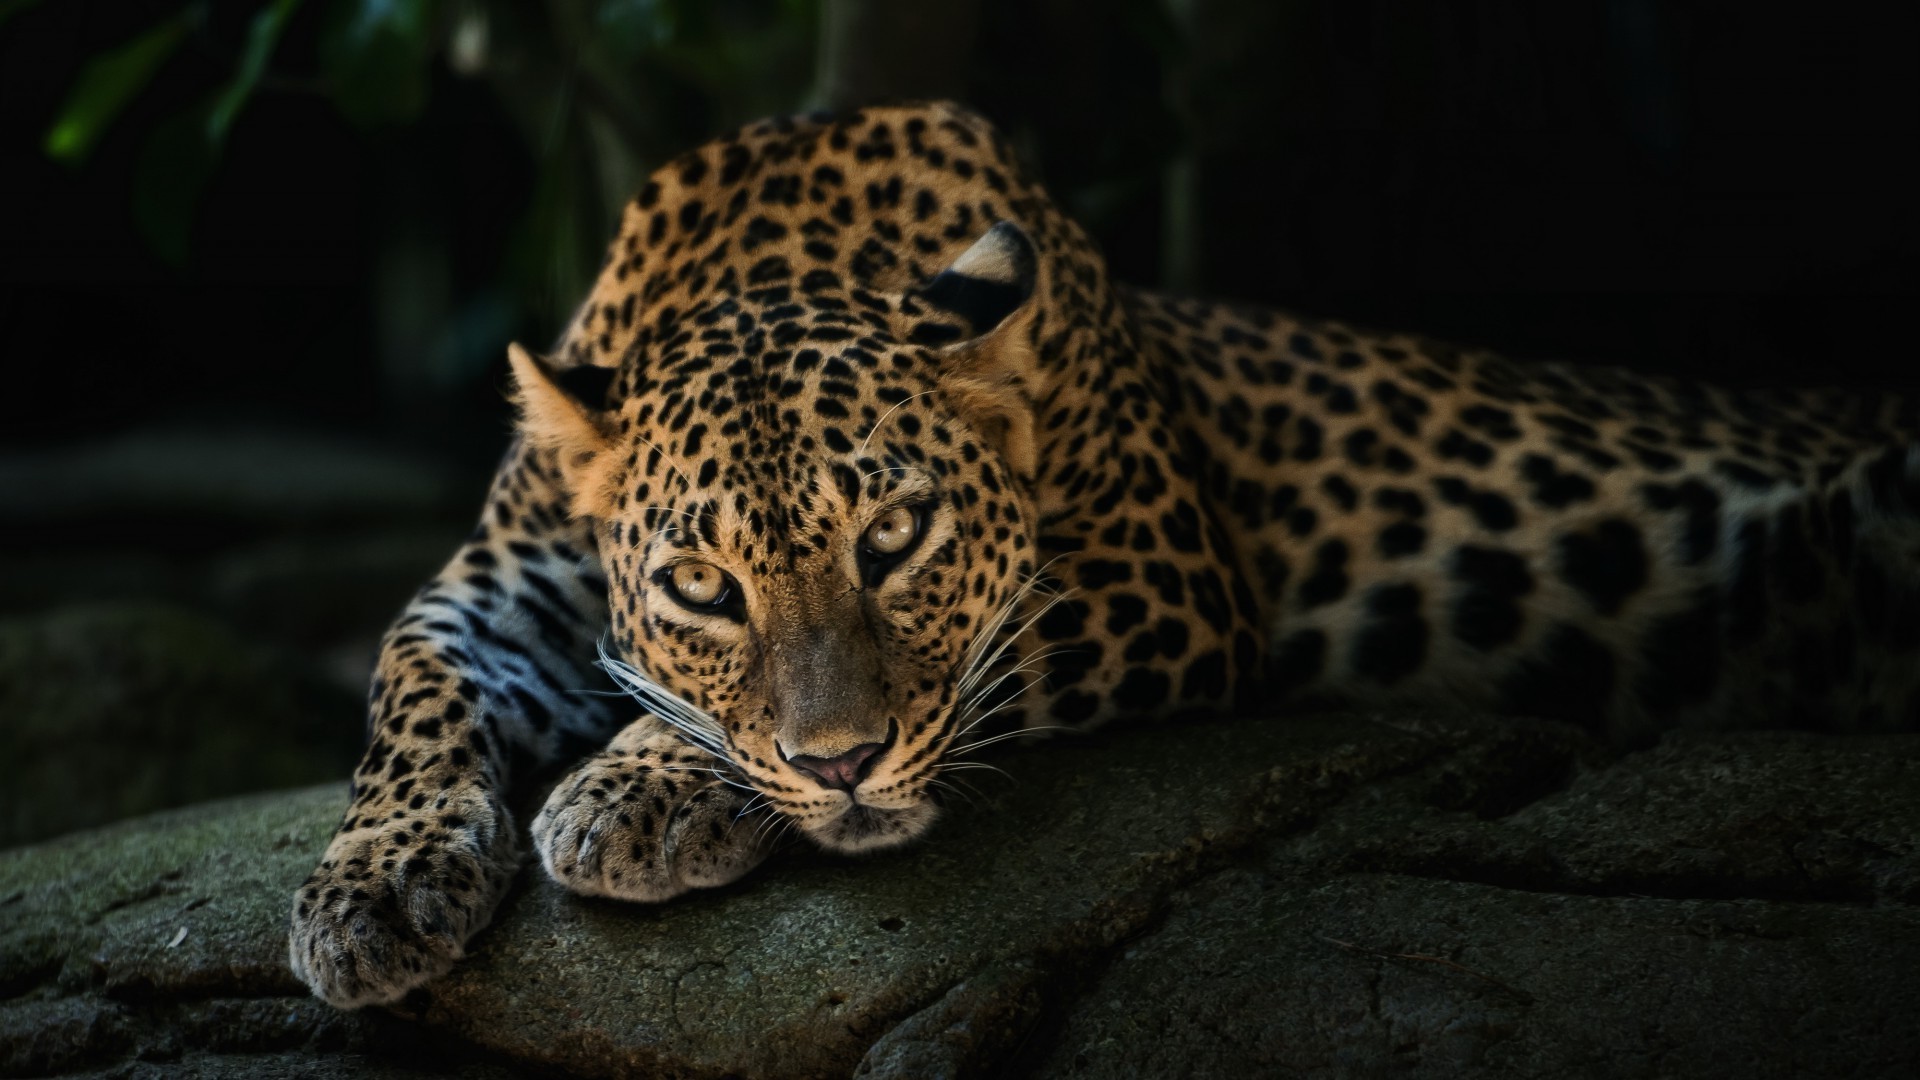 леопарды кошка леопард дикой природы млекопитающее хищник зоопарк природа охотник дикий опасность джунгли животное мясоед сафари мех глаз охота